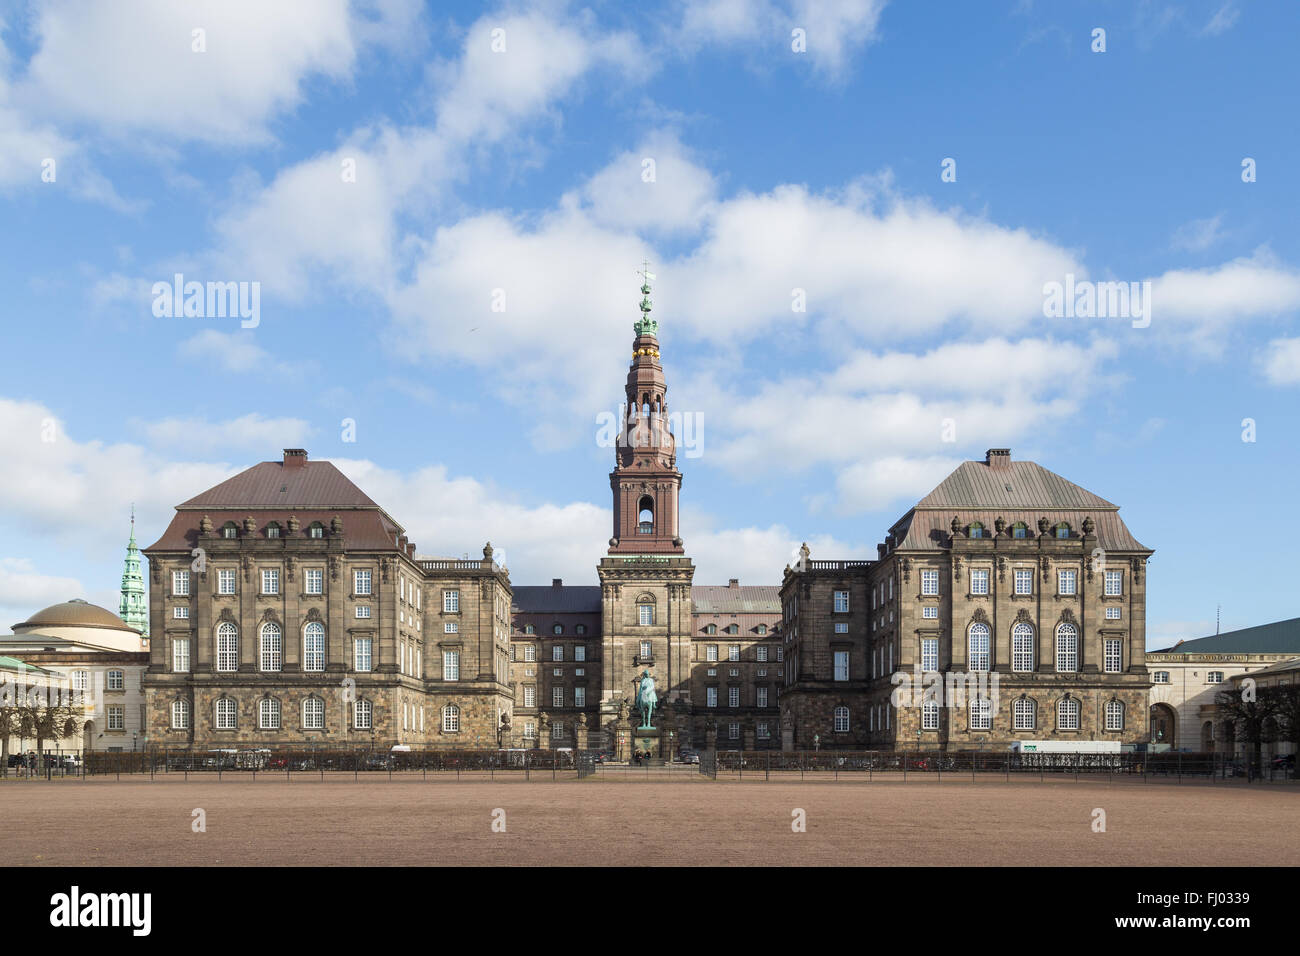 Photographie de Palais de Christiansborg à Copenhague, Danemark. Banque D'Images